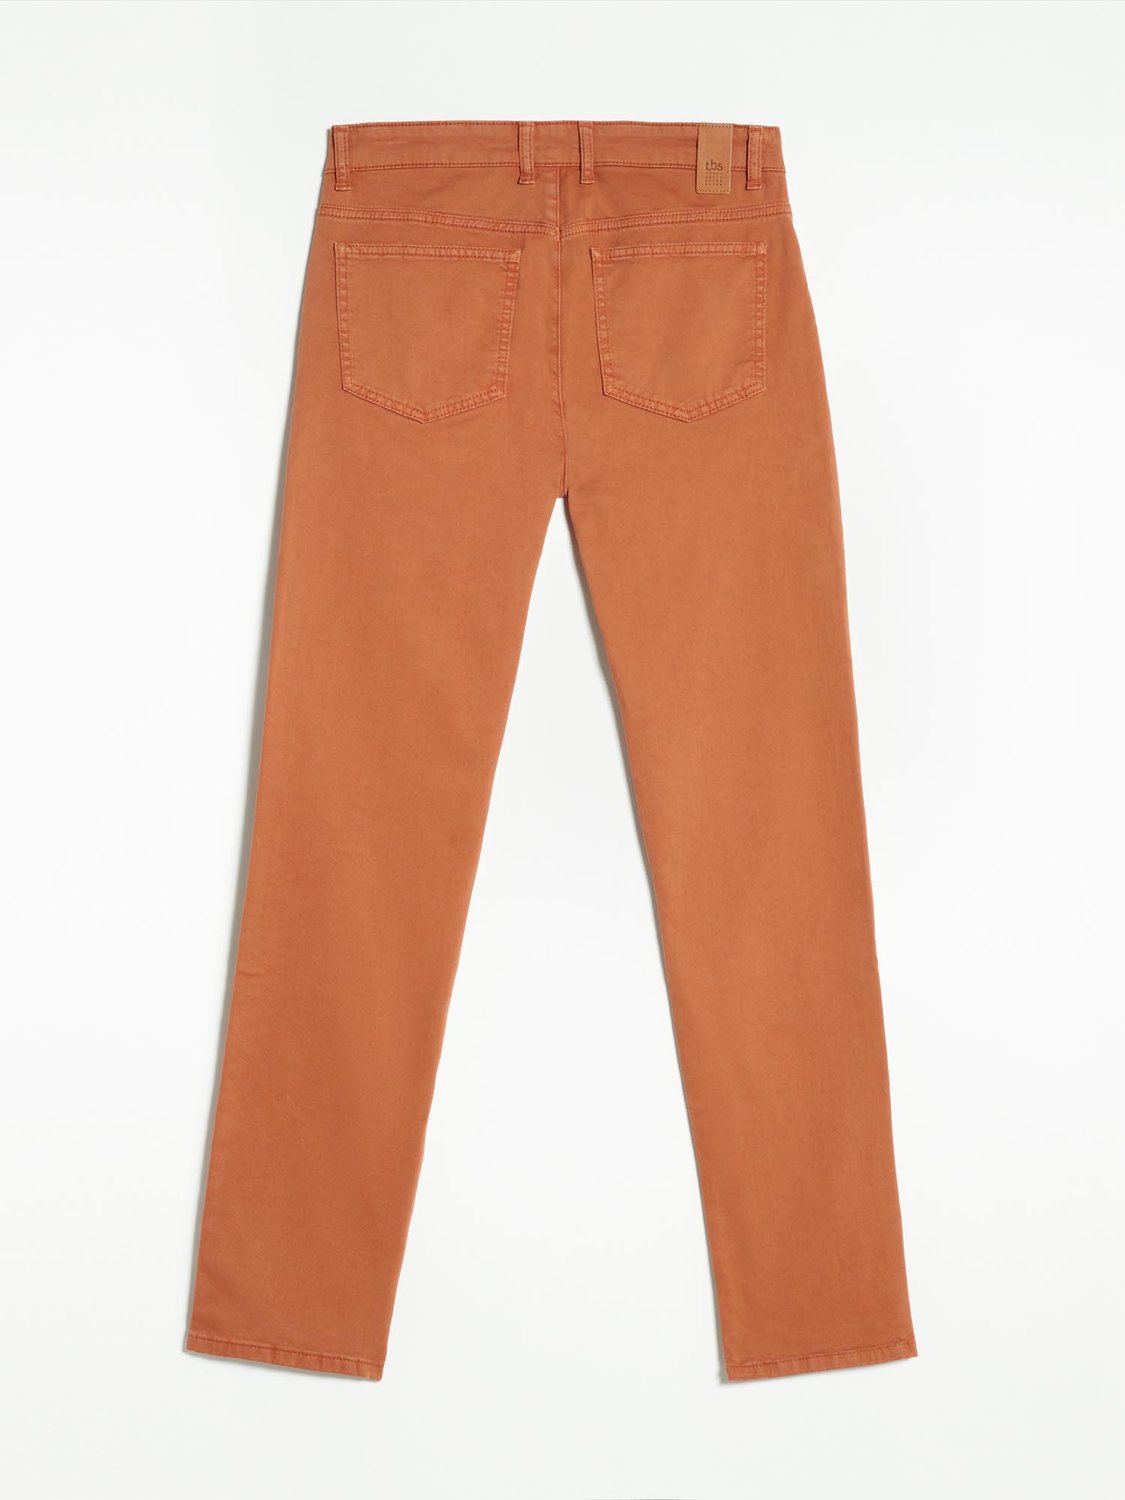 Pantalon Homme Coton Stretch Rouge